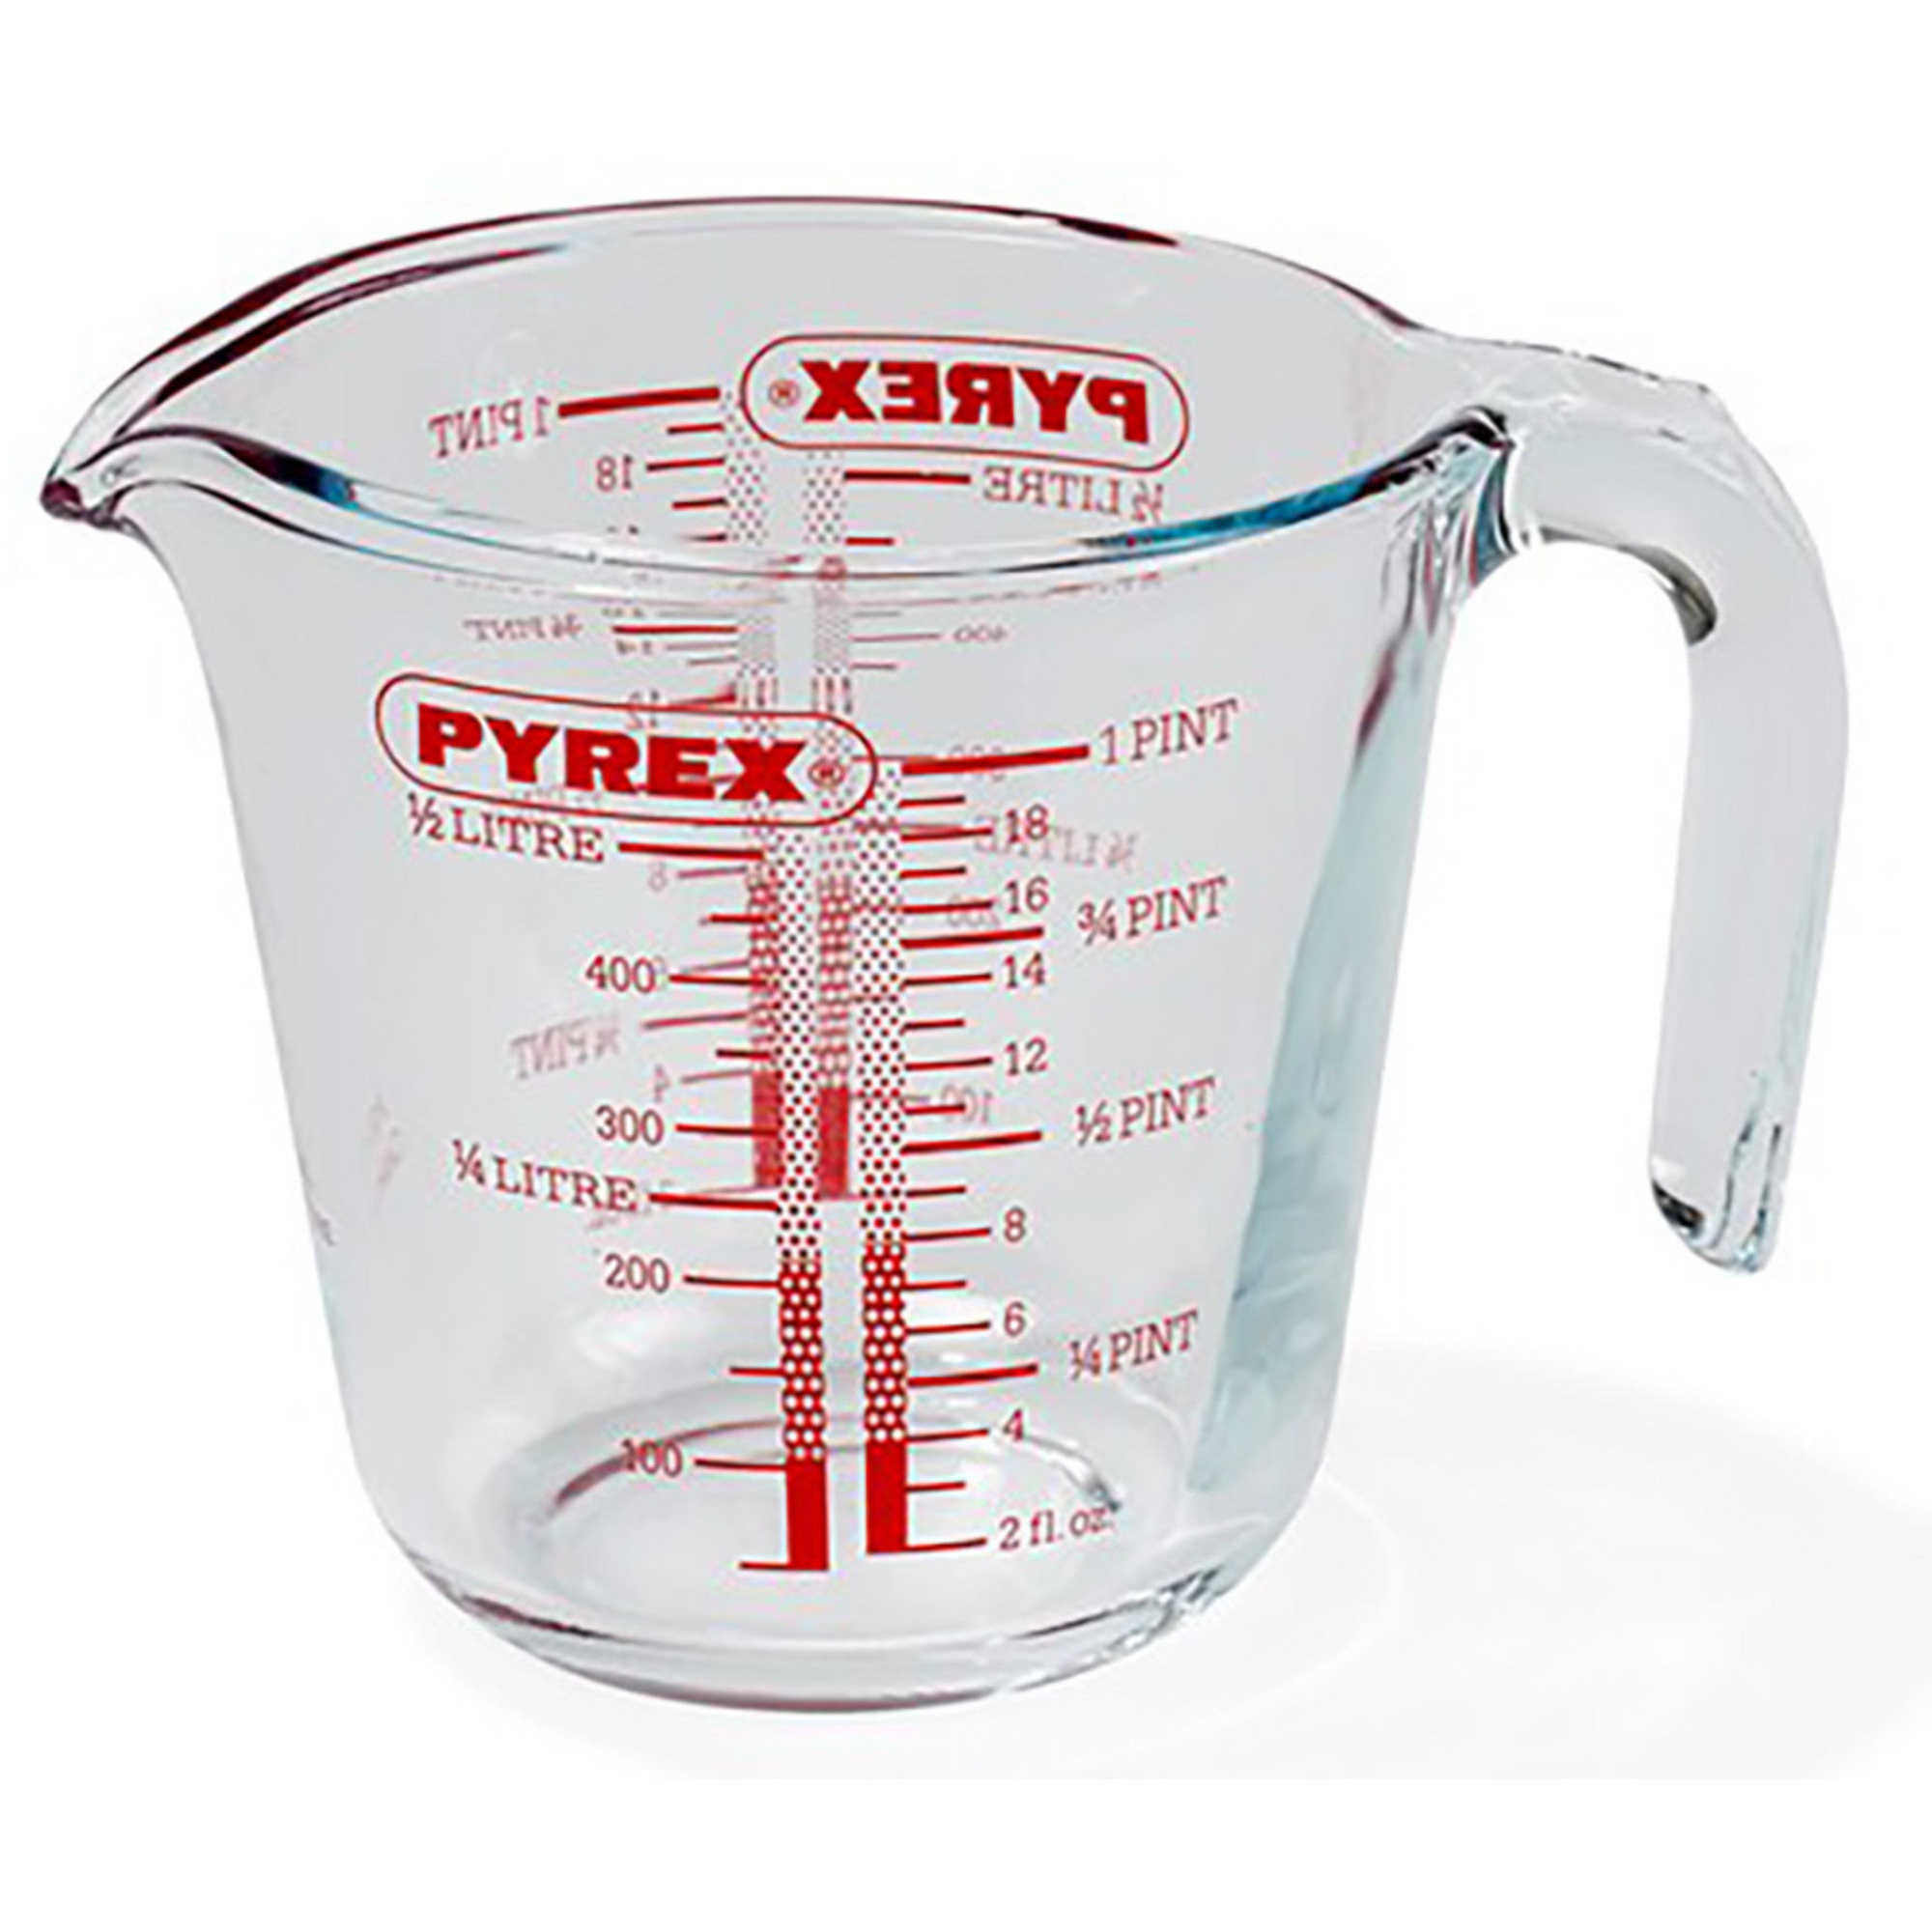 Pyrex 05 liter Målekande